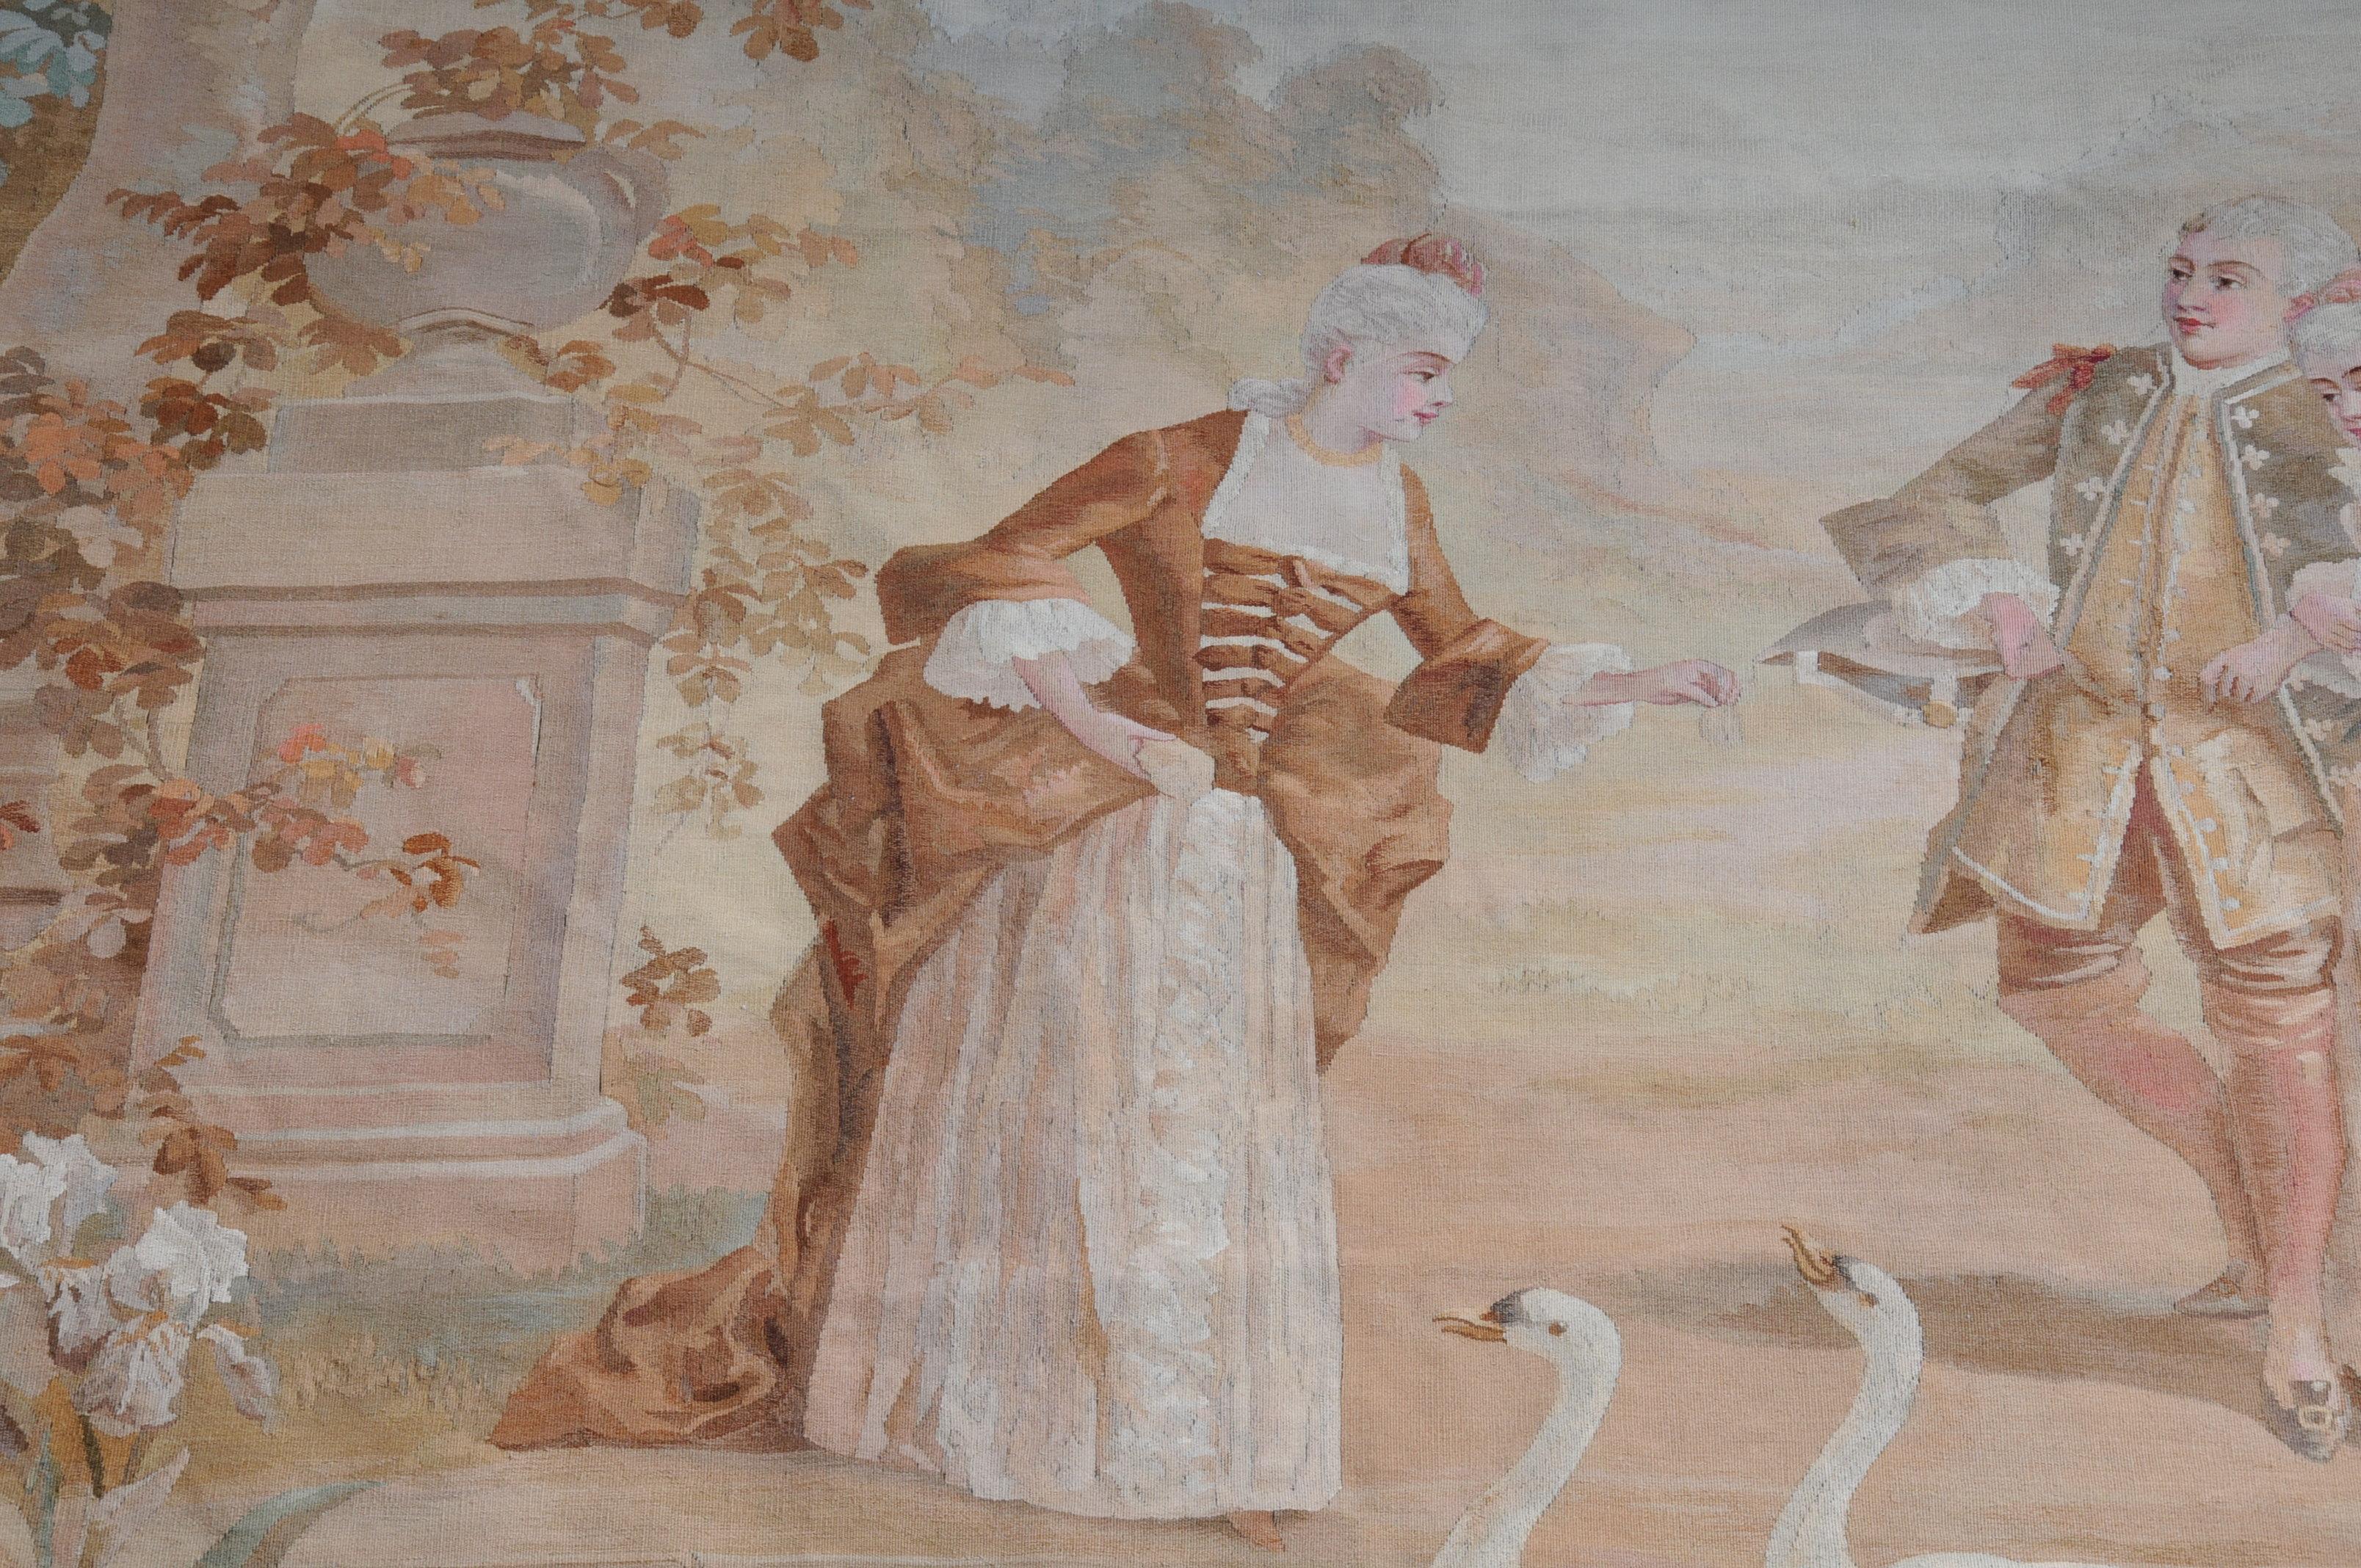 Beeindruckender Wandteppich mit einer schönen barocken Liebesszene am See.
Hochwertige Handarbeit.

(Y-116).